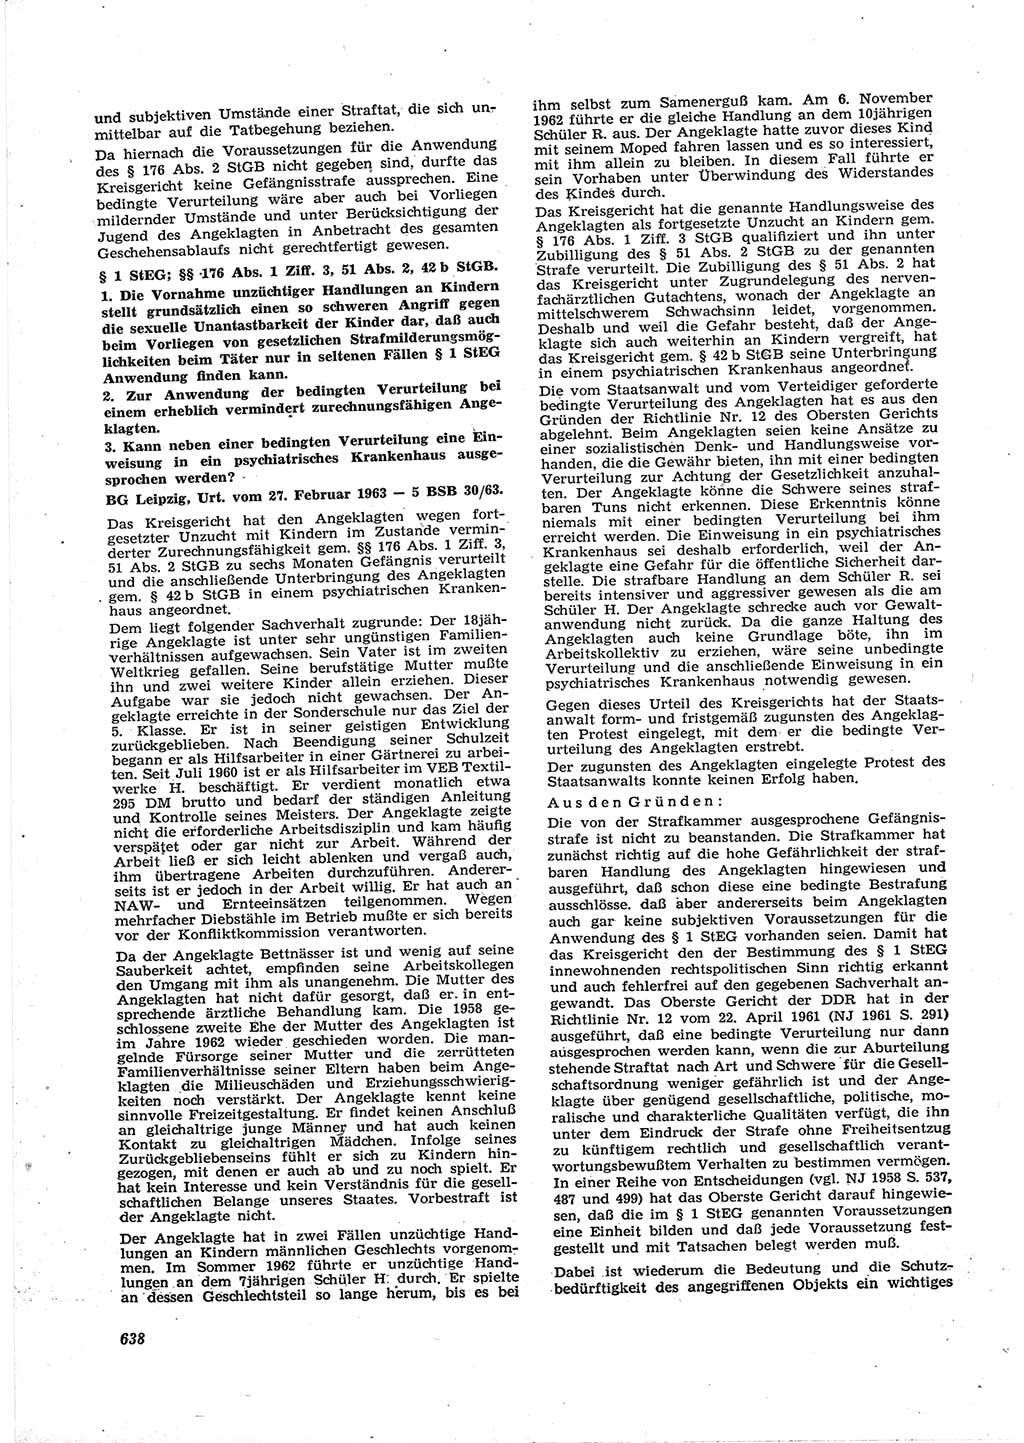 Neue Justiz (NJ), Zeitschrift für Recht und Rechtswissenschaft [Deutsche Demokratische Republik (DDR)], 17. Jahrgang 1963, Seite 638 (NJ DDR 1963, S. 638)